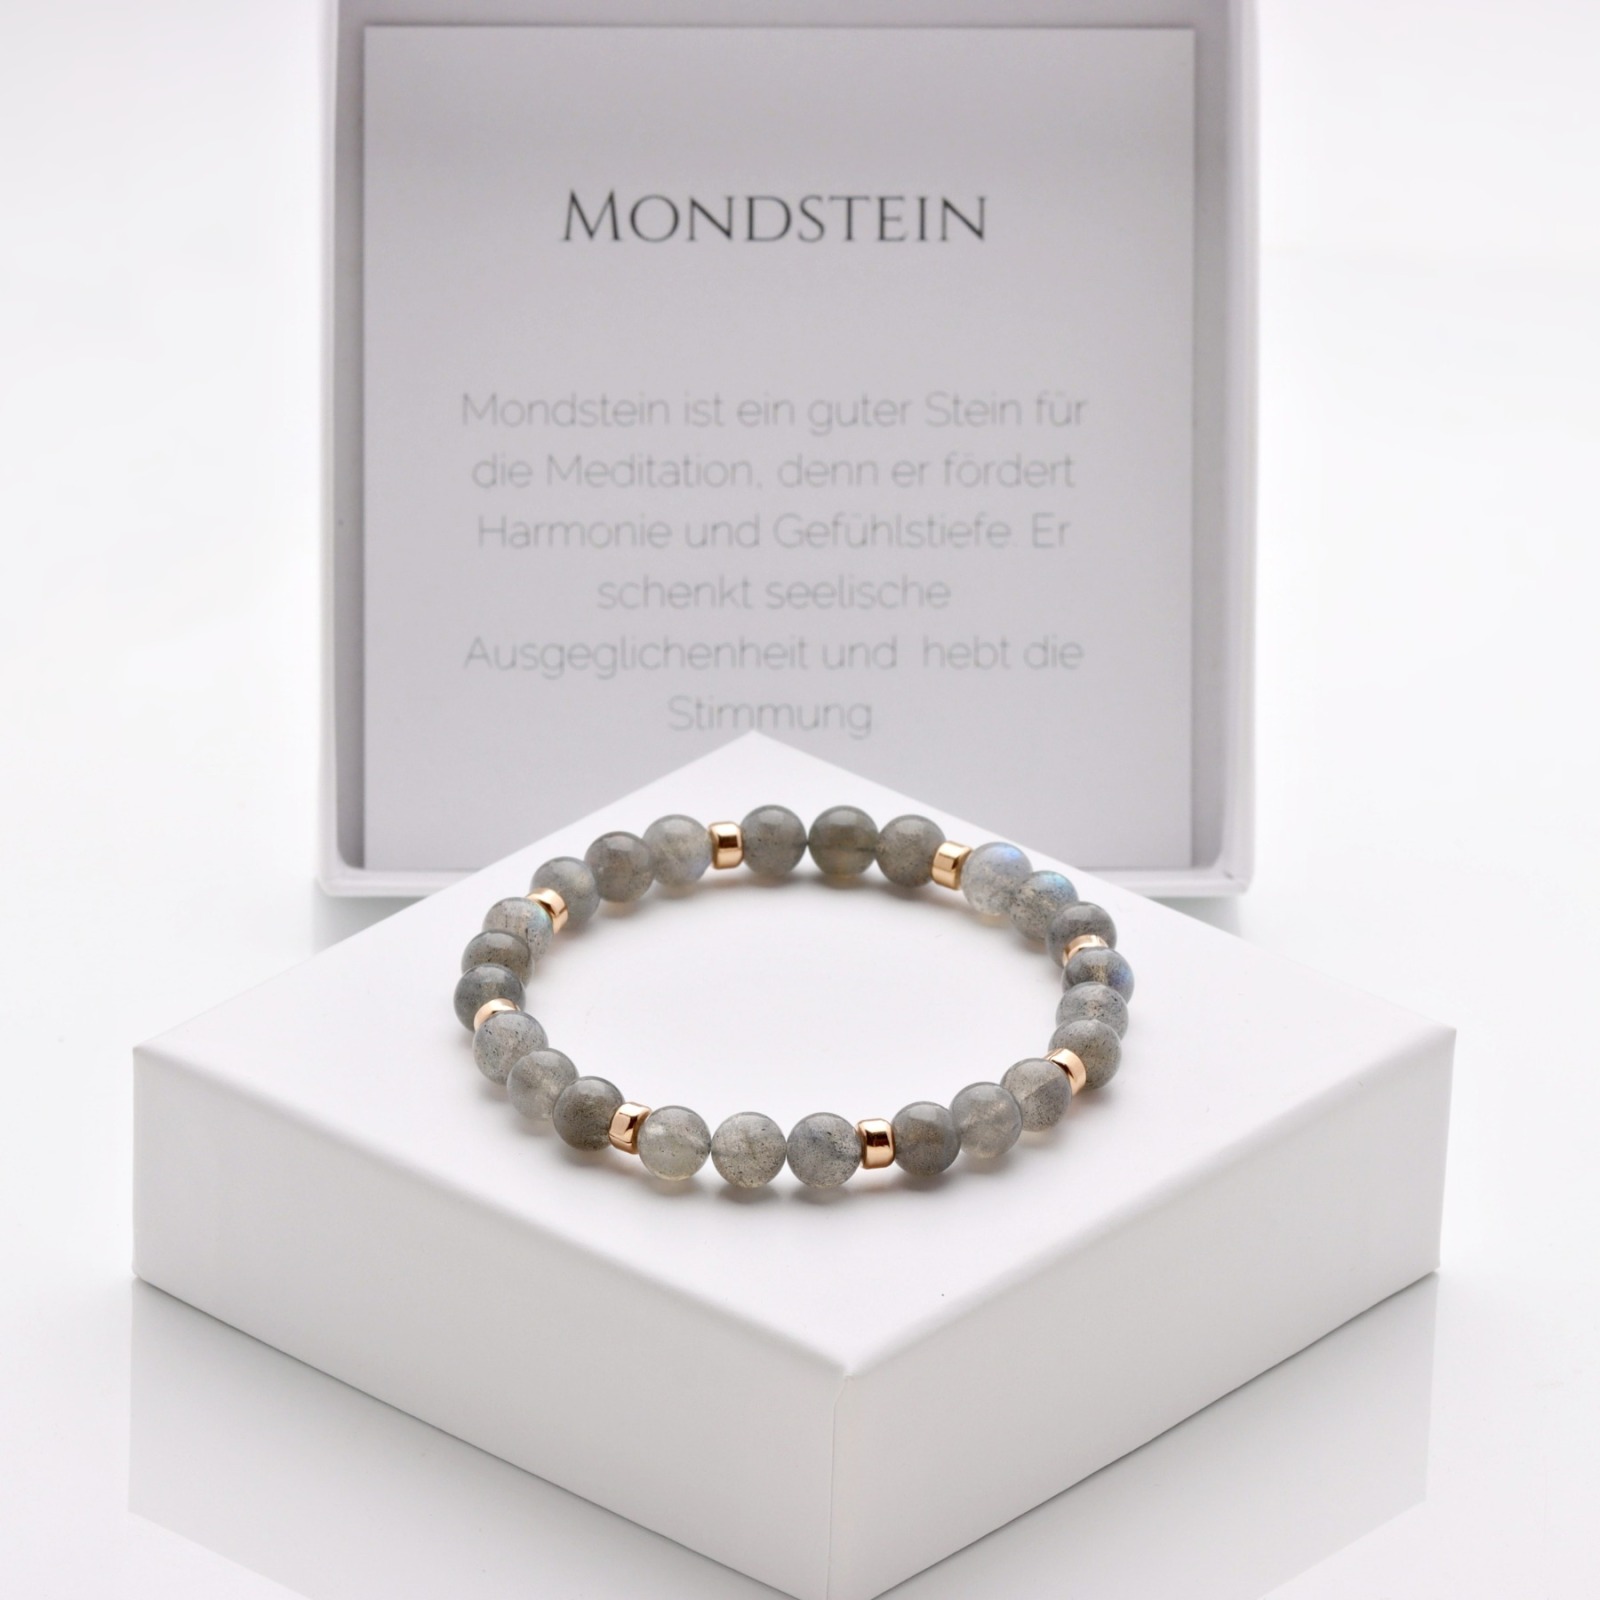 Echtes Mondstein Armband Damen grau elastisch 925 Silber oder vergoldet perfekte Geschenk-Idee für